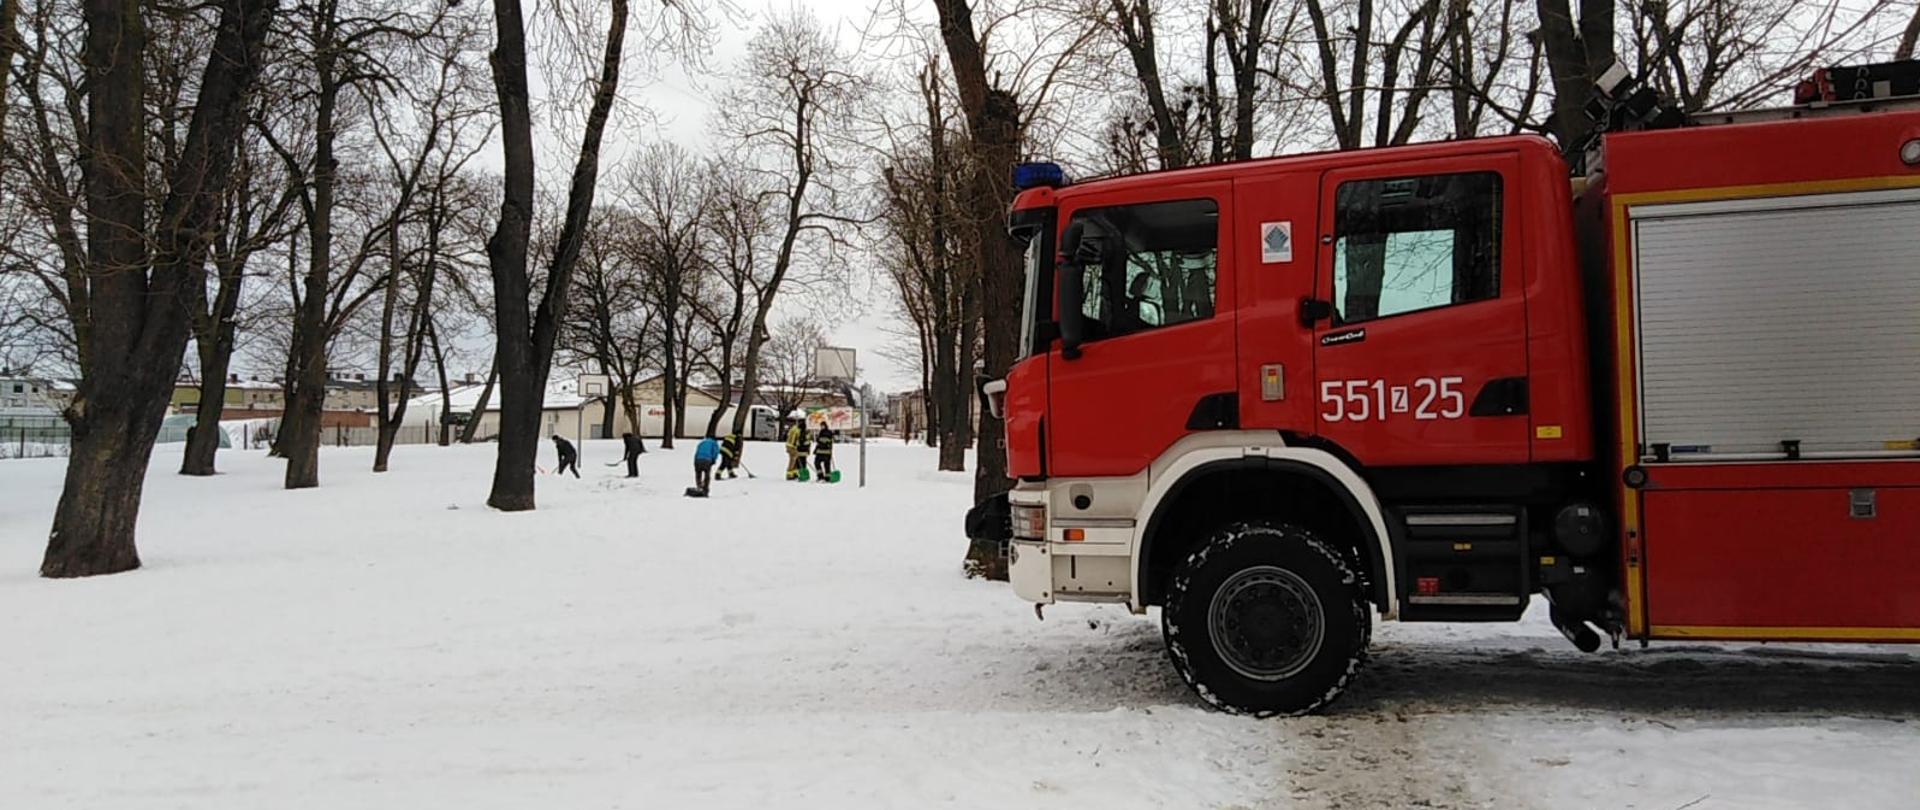 Zdjęcie przedstawia samochód strażacki stojący w pełnym śniegu parku z drzewami. Na aucie widnieje numer pojazdu 551z25. W tle widać odśnieżające osoby oraz budynki.